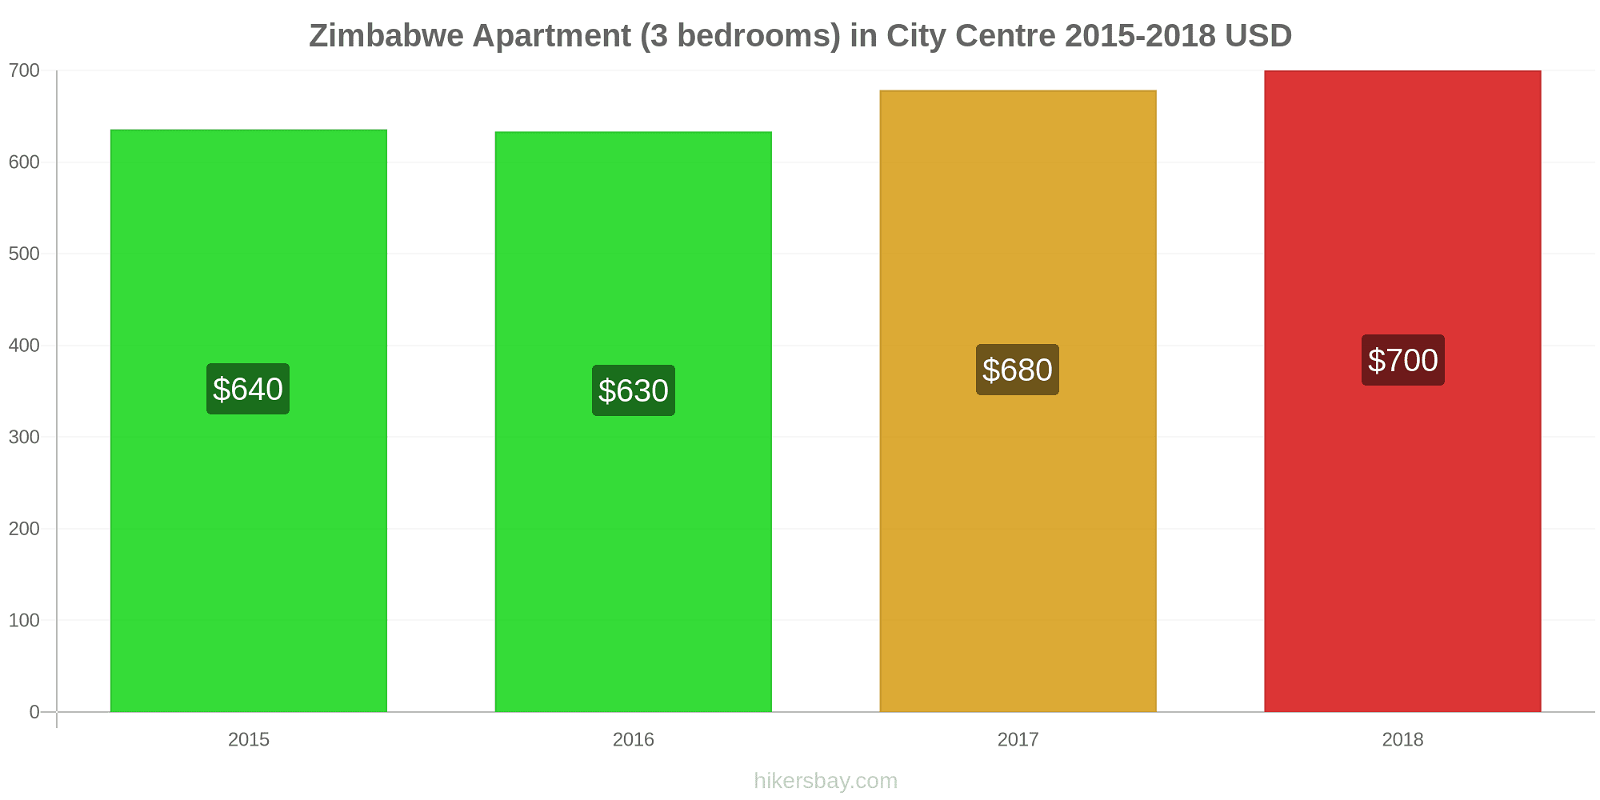 Zimbabwe price changes Apartment (3 bedrooms) in City Centre hikersbay.com